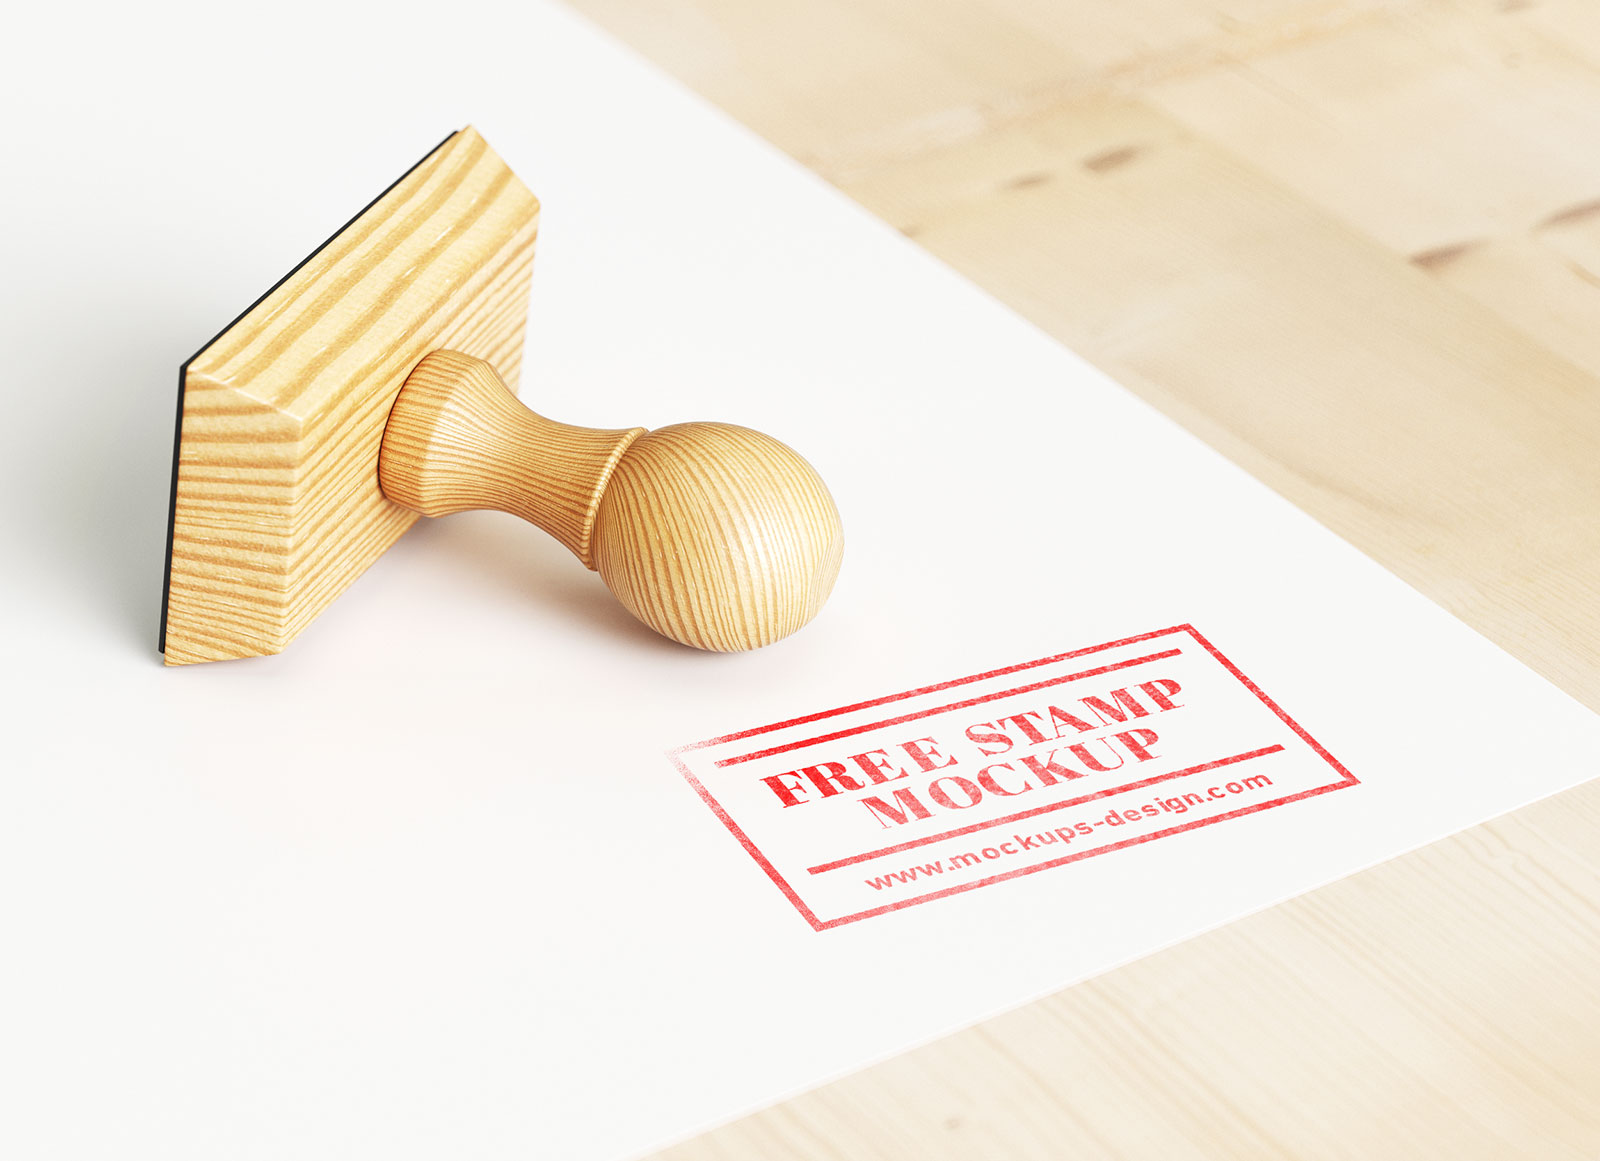 Wooden Rubber Stamp Mockup